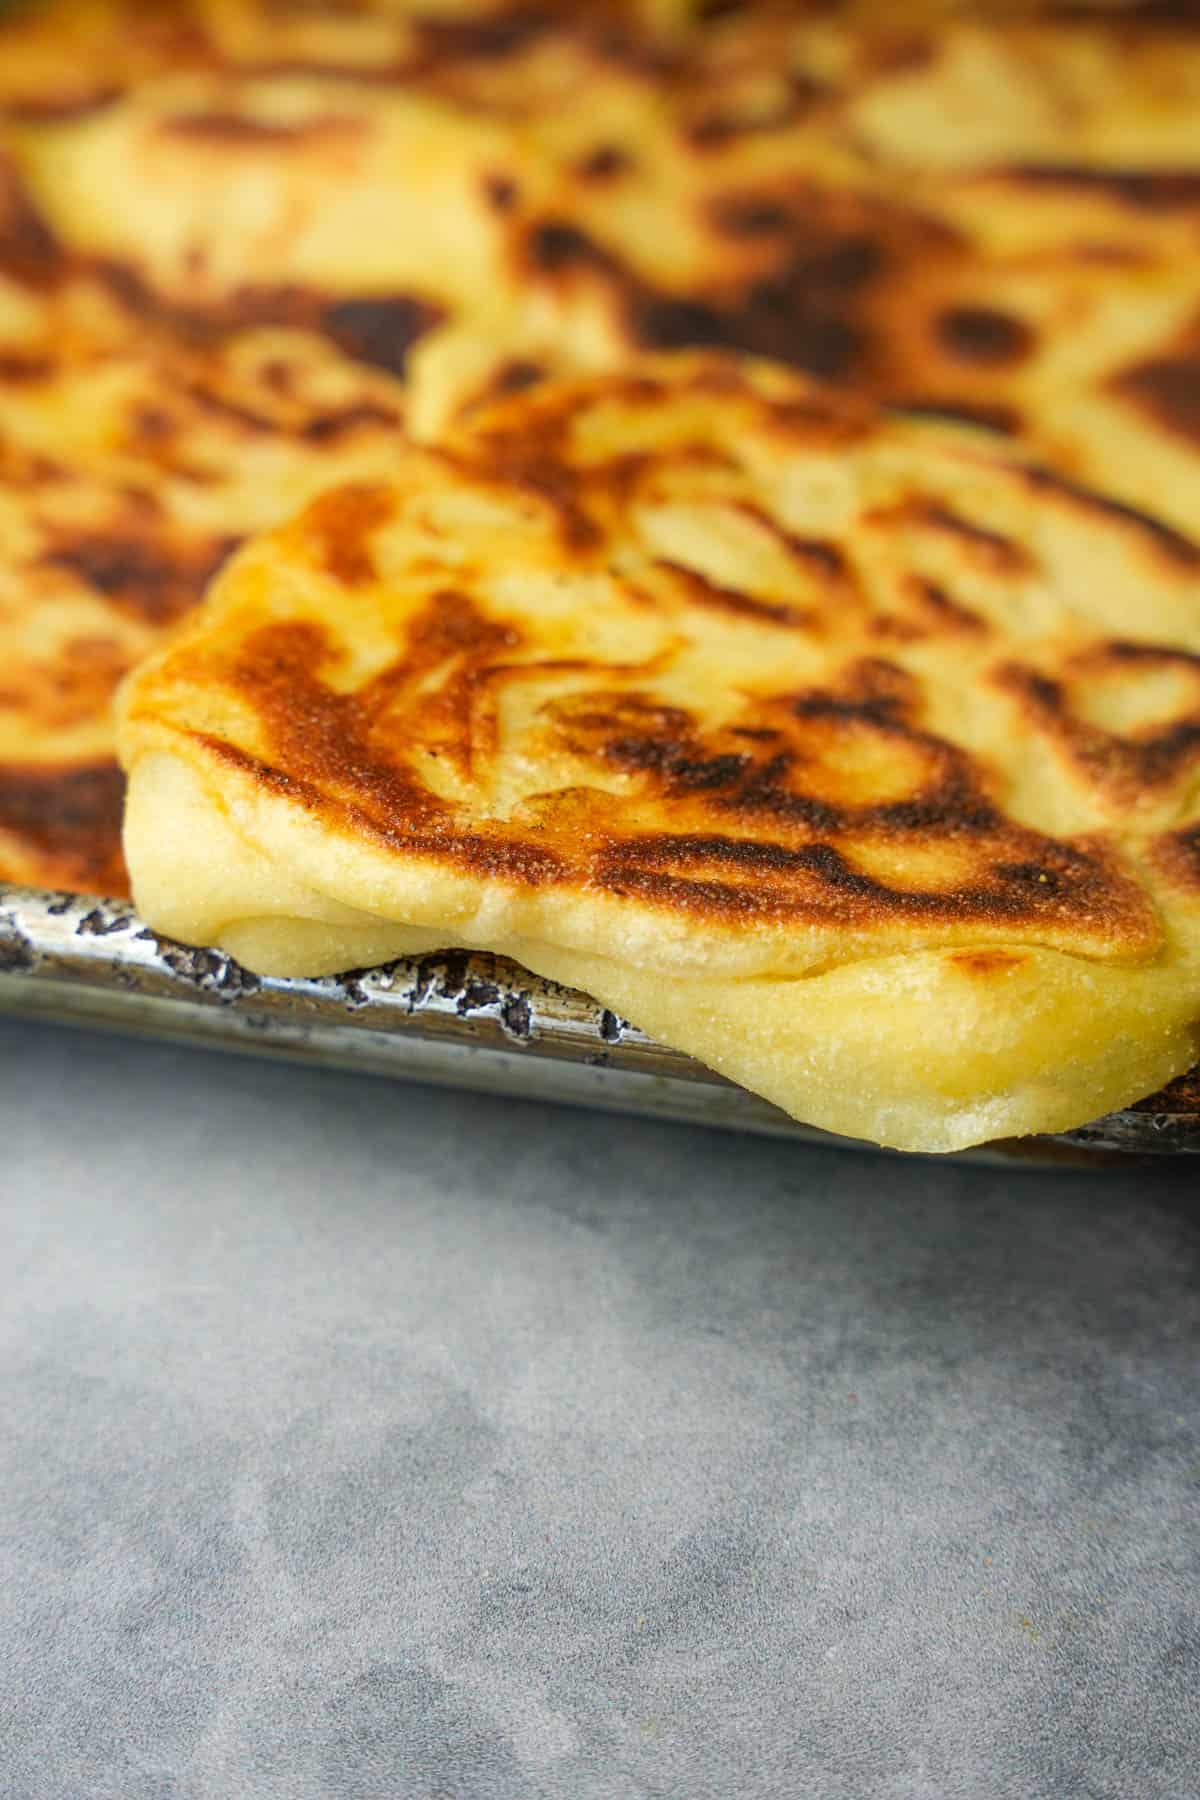 A metal sheet pan full of freshly baked Moroccan pancakes.